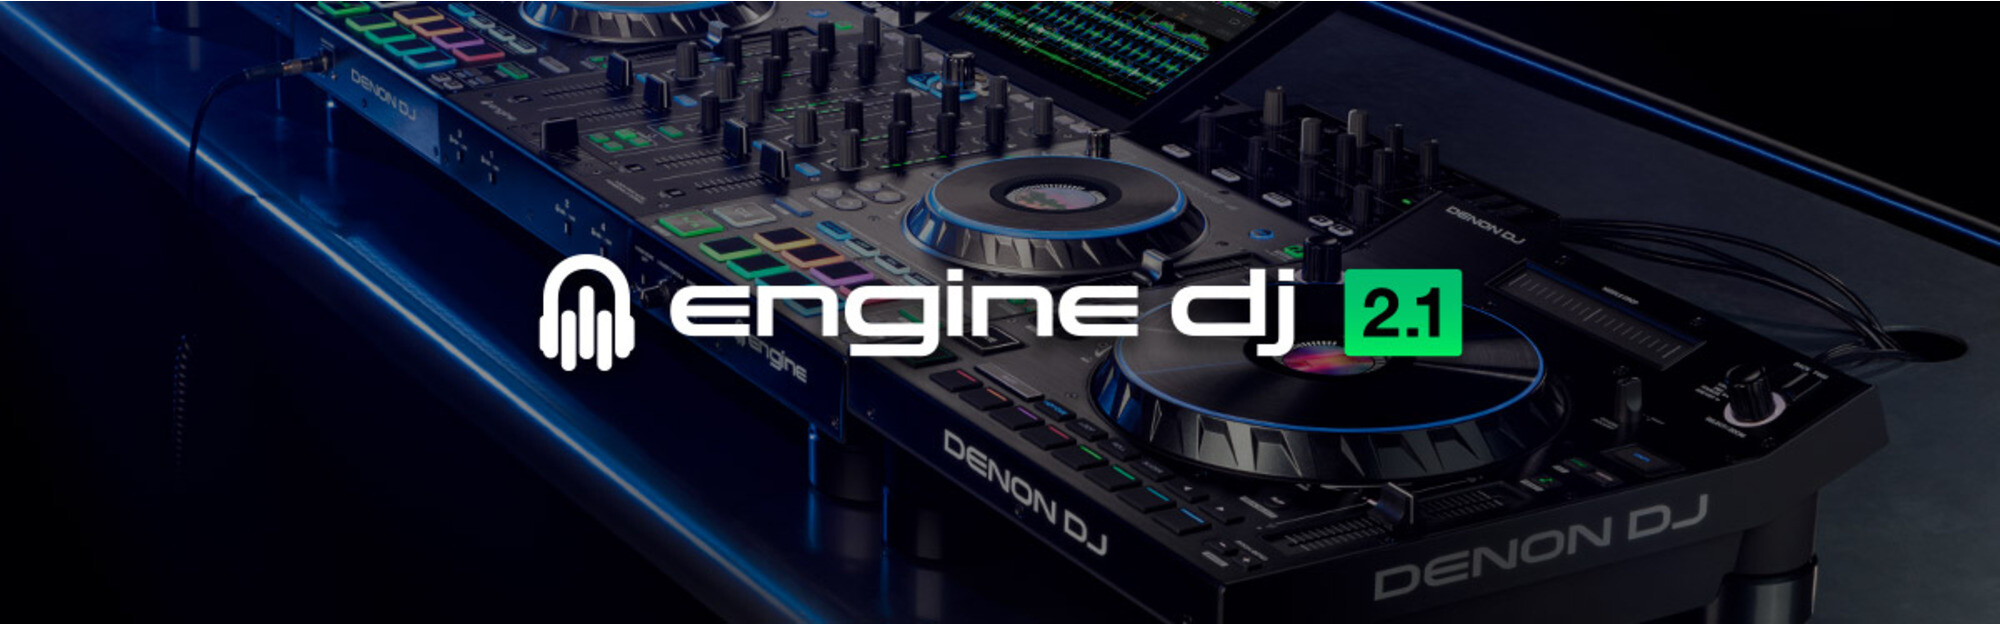 Engine DJ 2.1